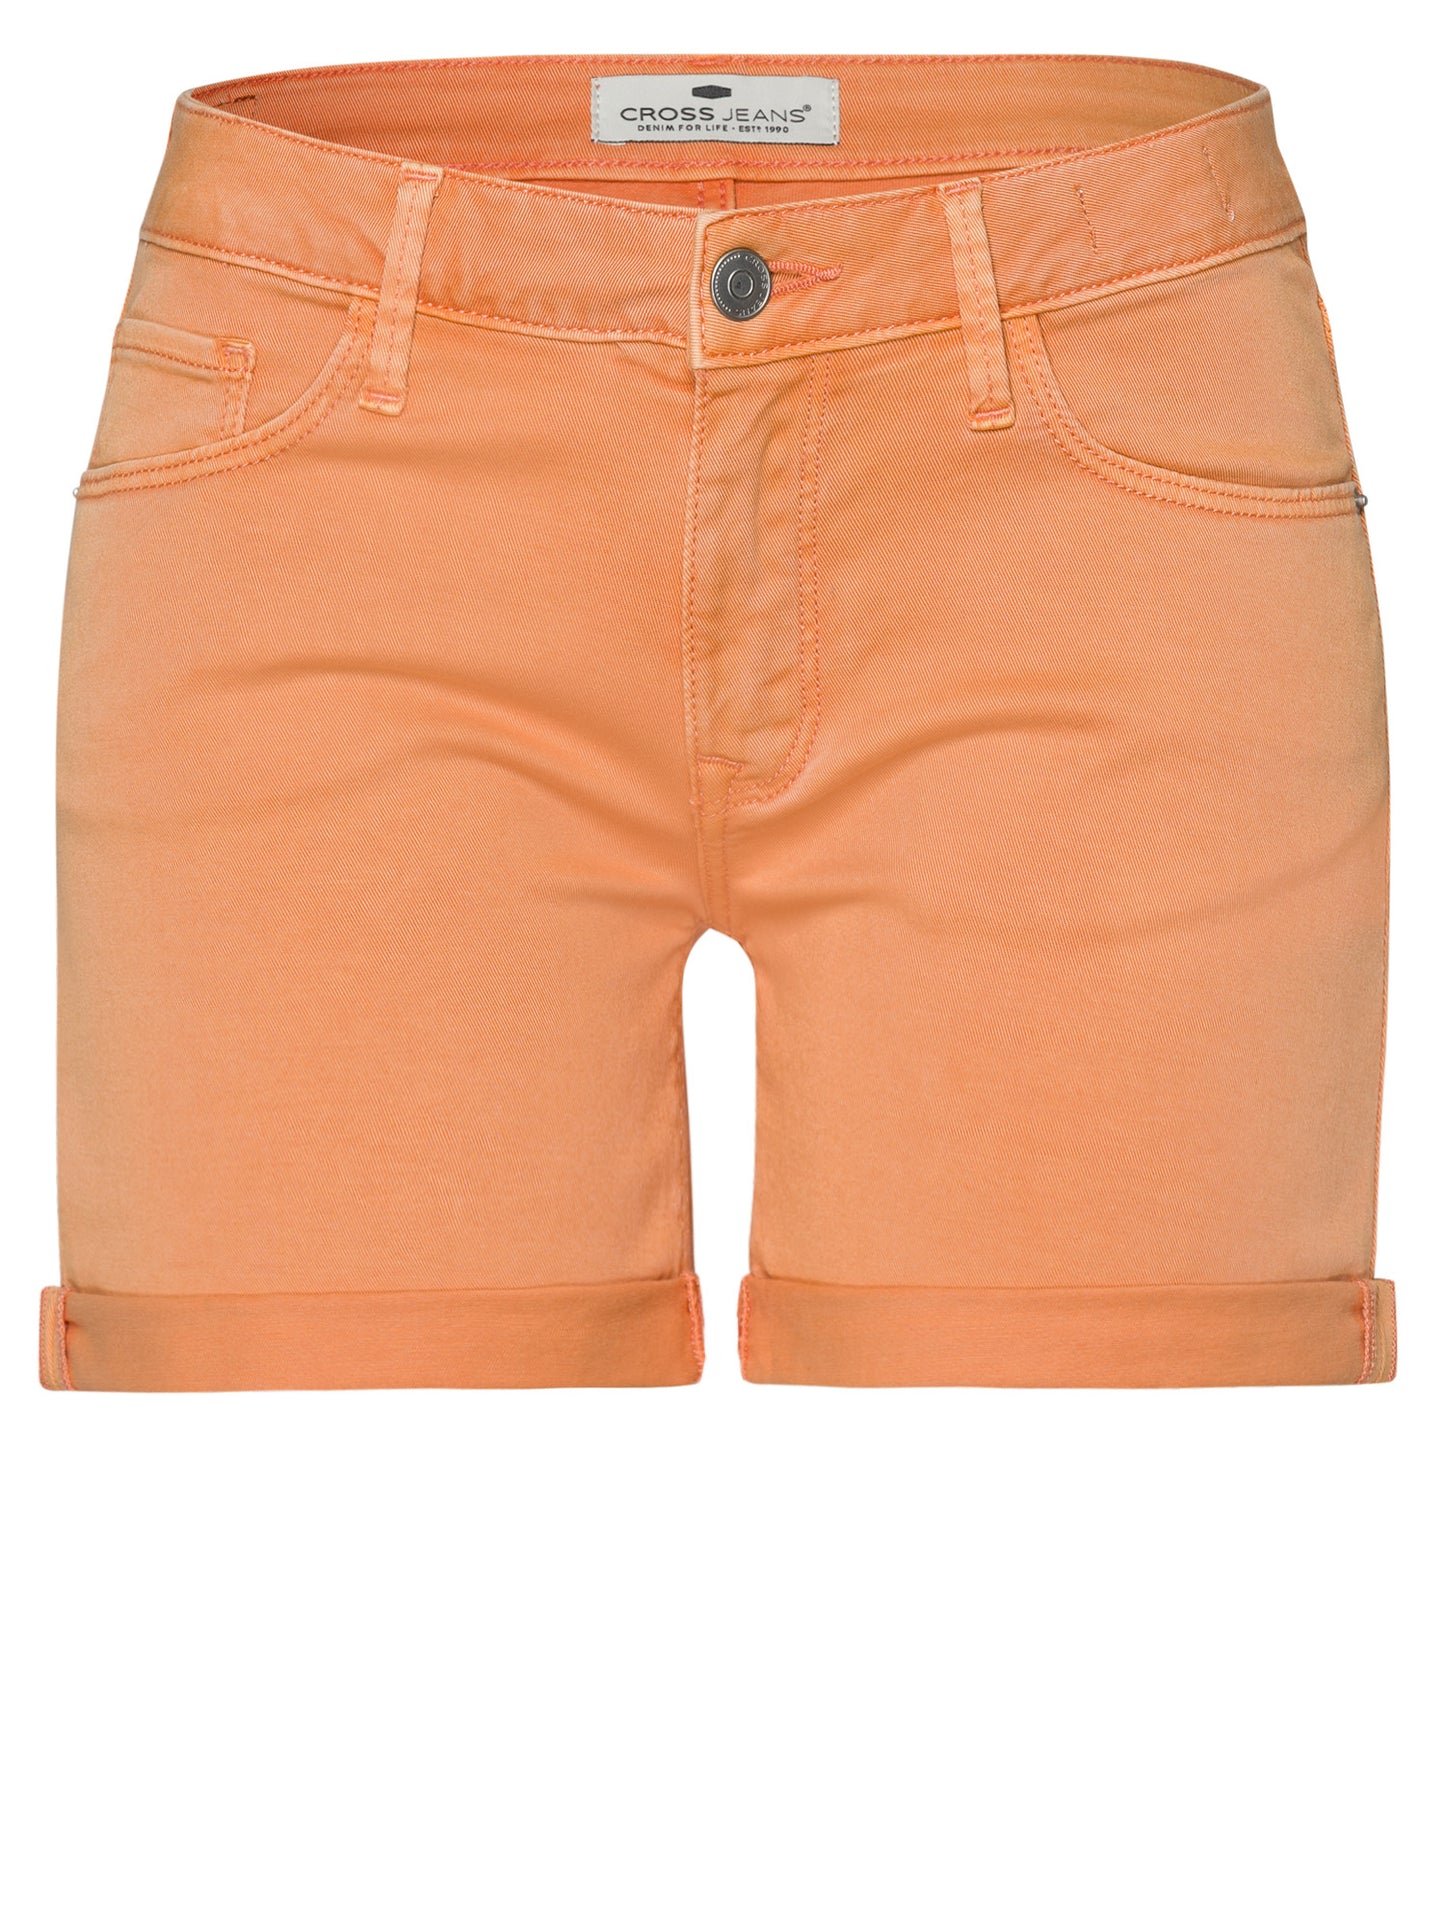 Zena women's jeans slim shorts orange